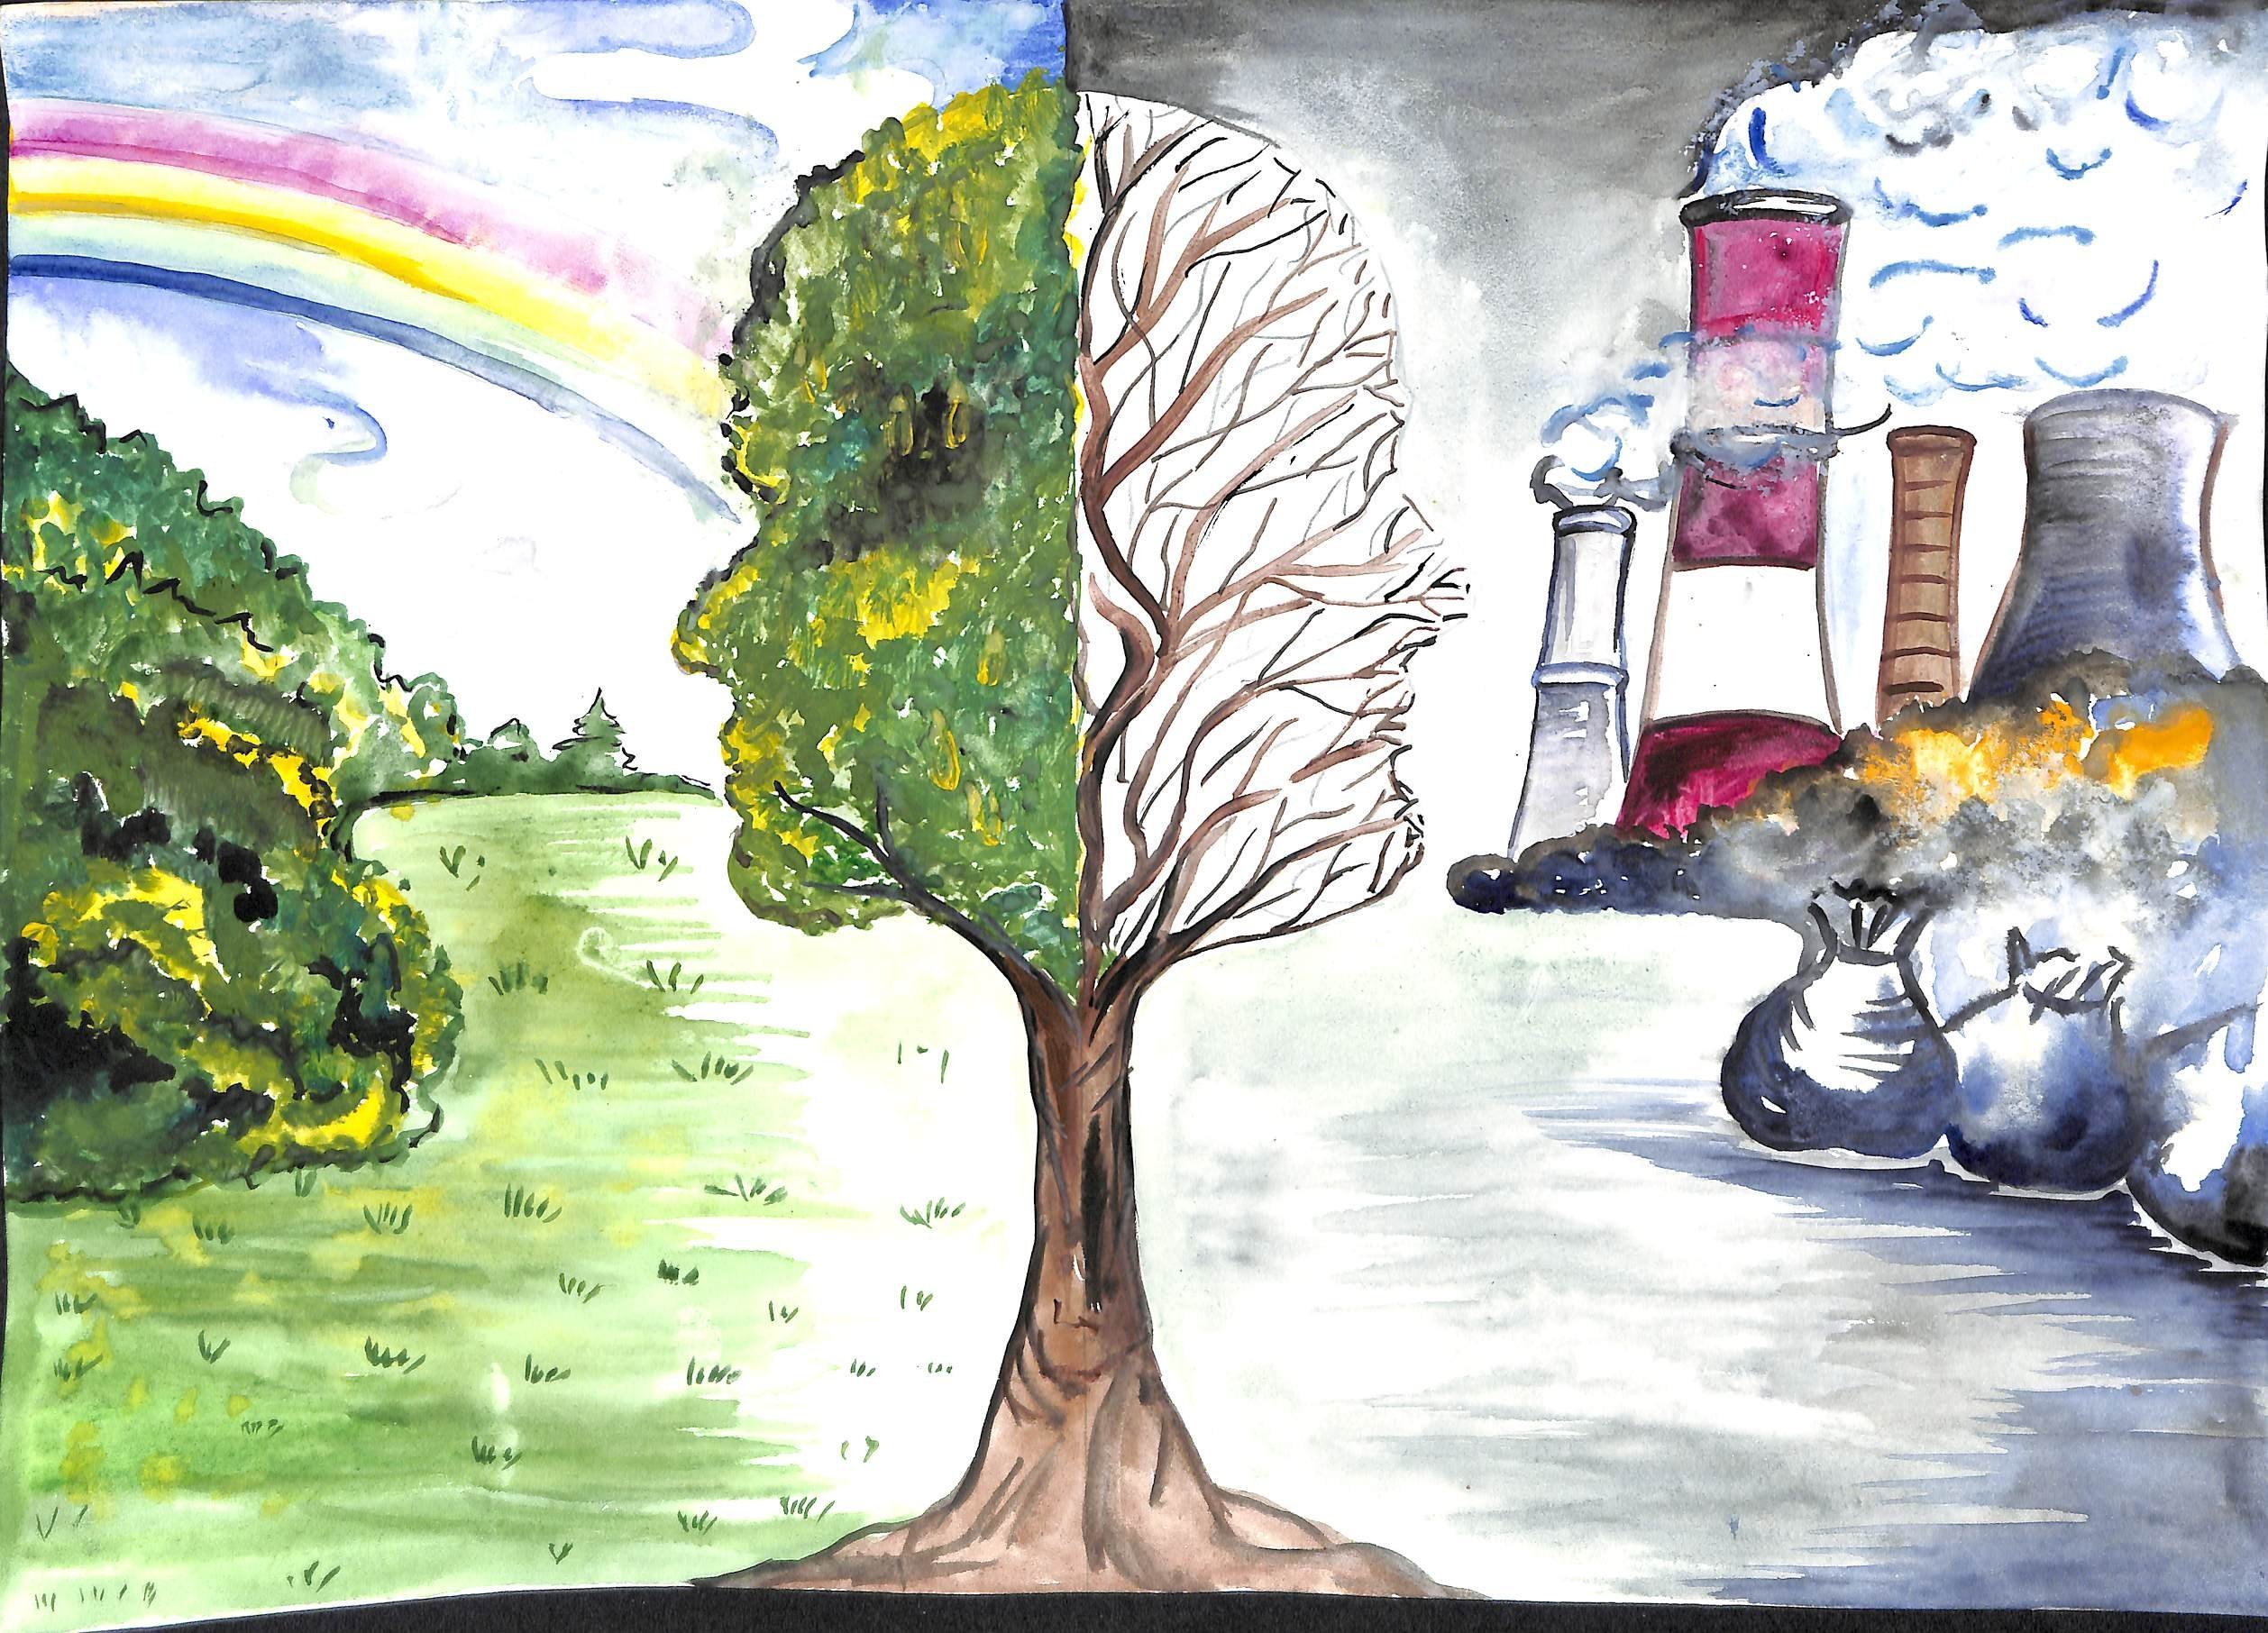 Рисунок год экология. Рисунок на тему экология. Hbceyrb TF 'rjkjubxtcre. Ntve. Рисунок экология природы. Детские рисунки на экологическую тему.